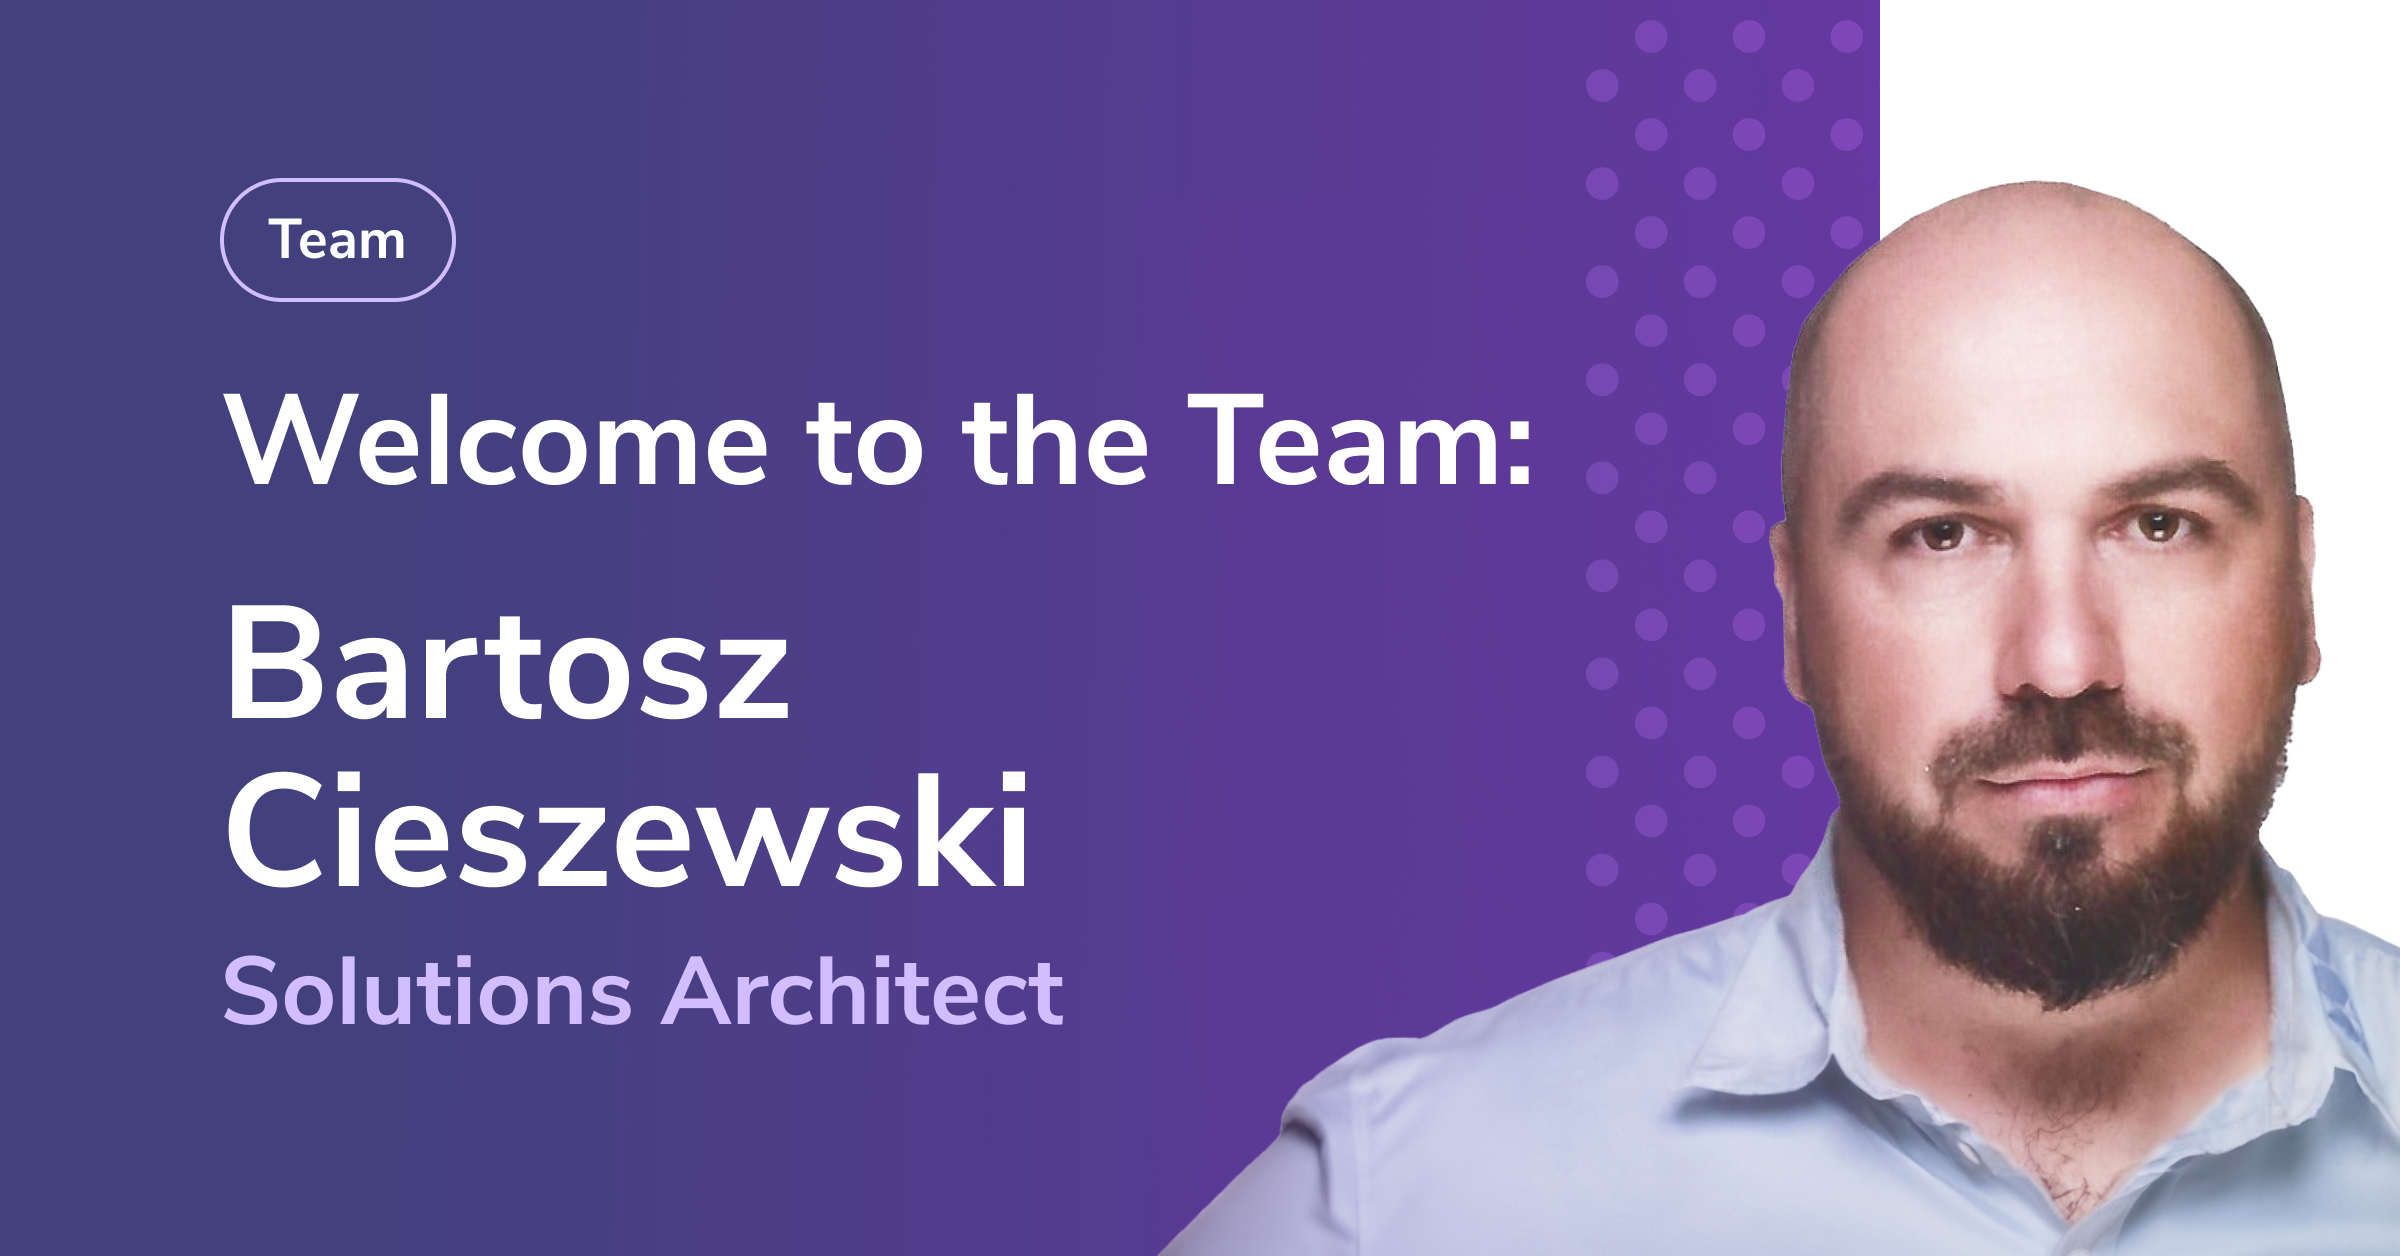 Bartosz Cieszewski dołącza do zespołu Secfense. Wzmocni pion rozwoju technologii